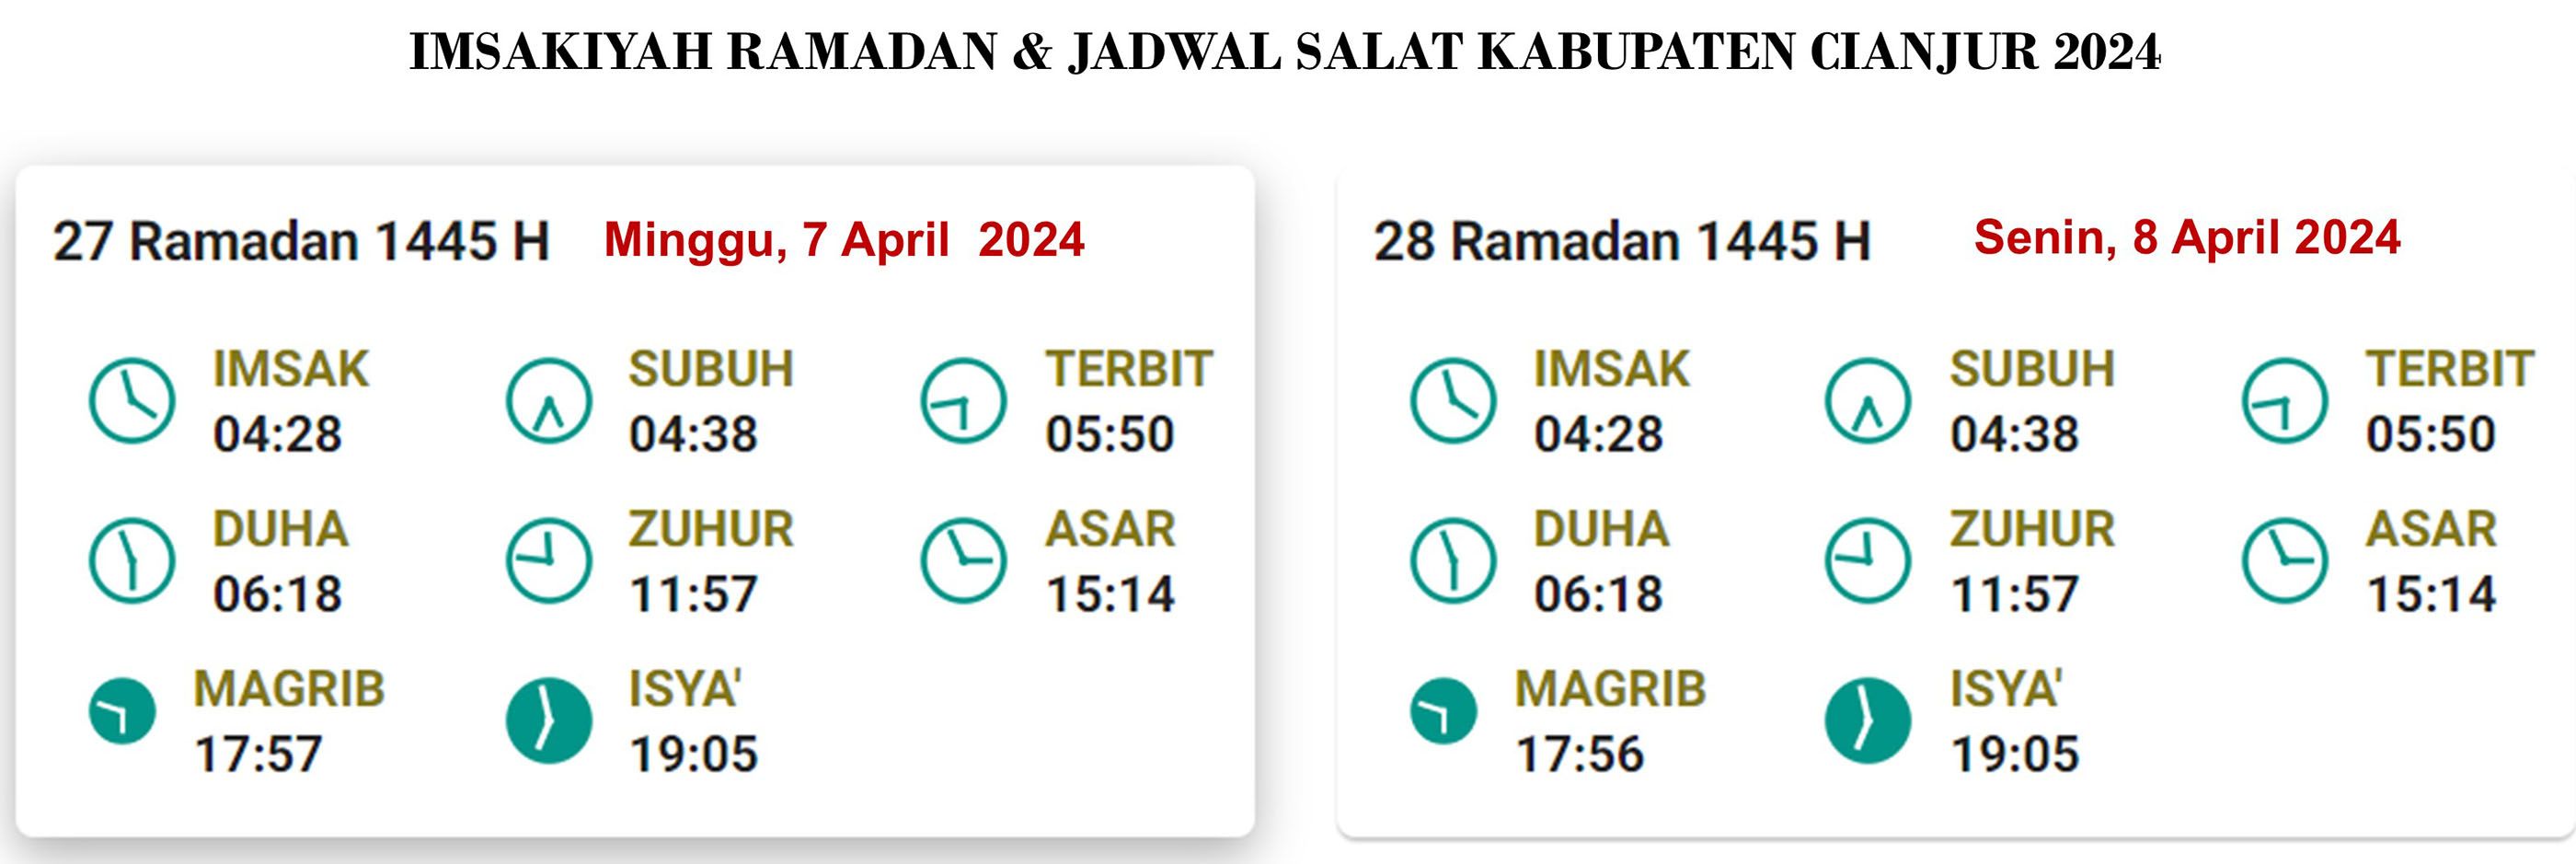 Cianjur: Jadwal Puasa dan Salat, 8April 2024/28 Ramadan 1445 H;